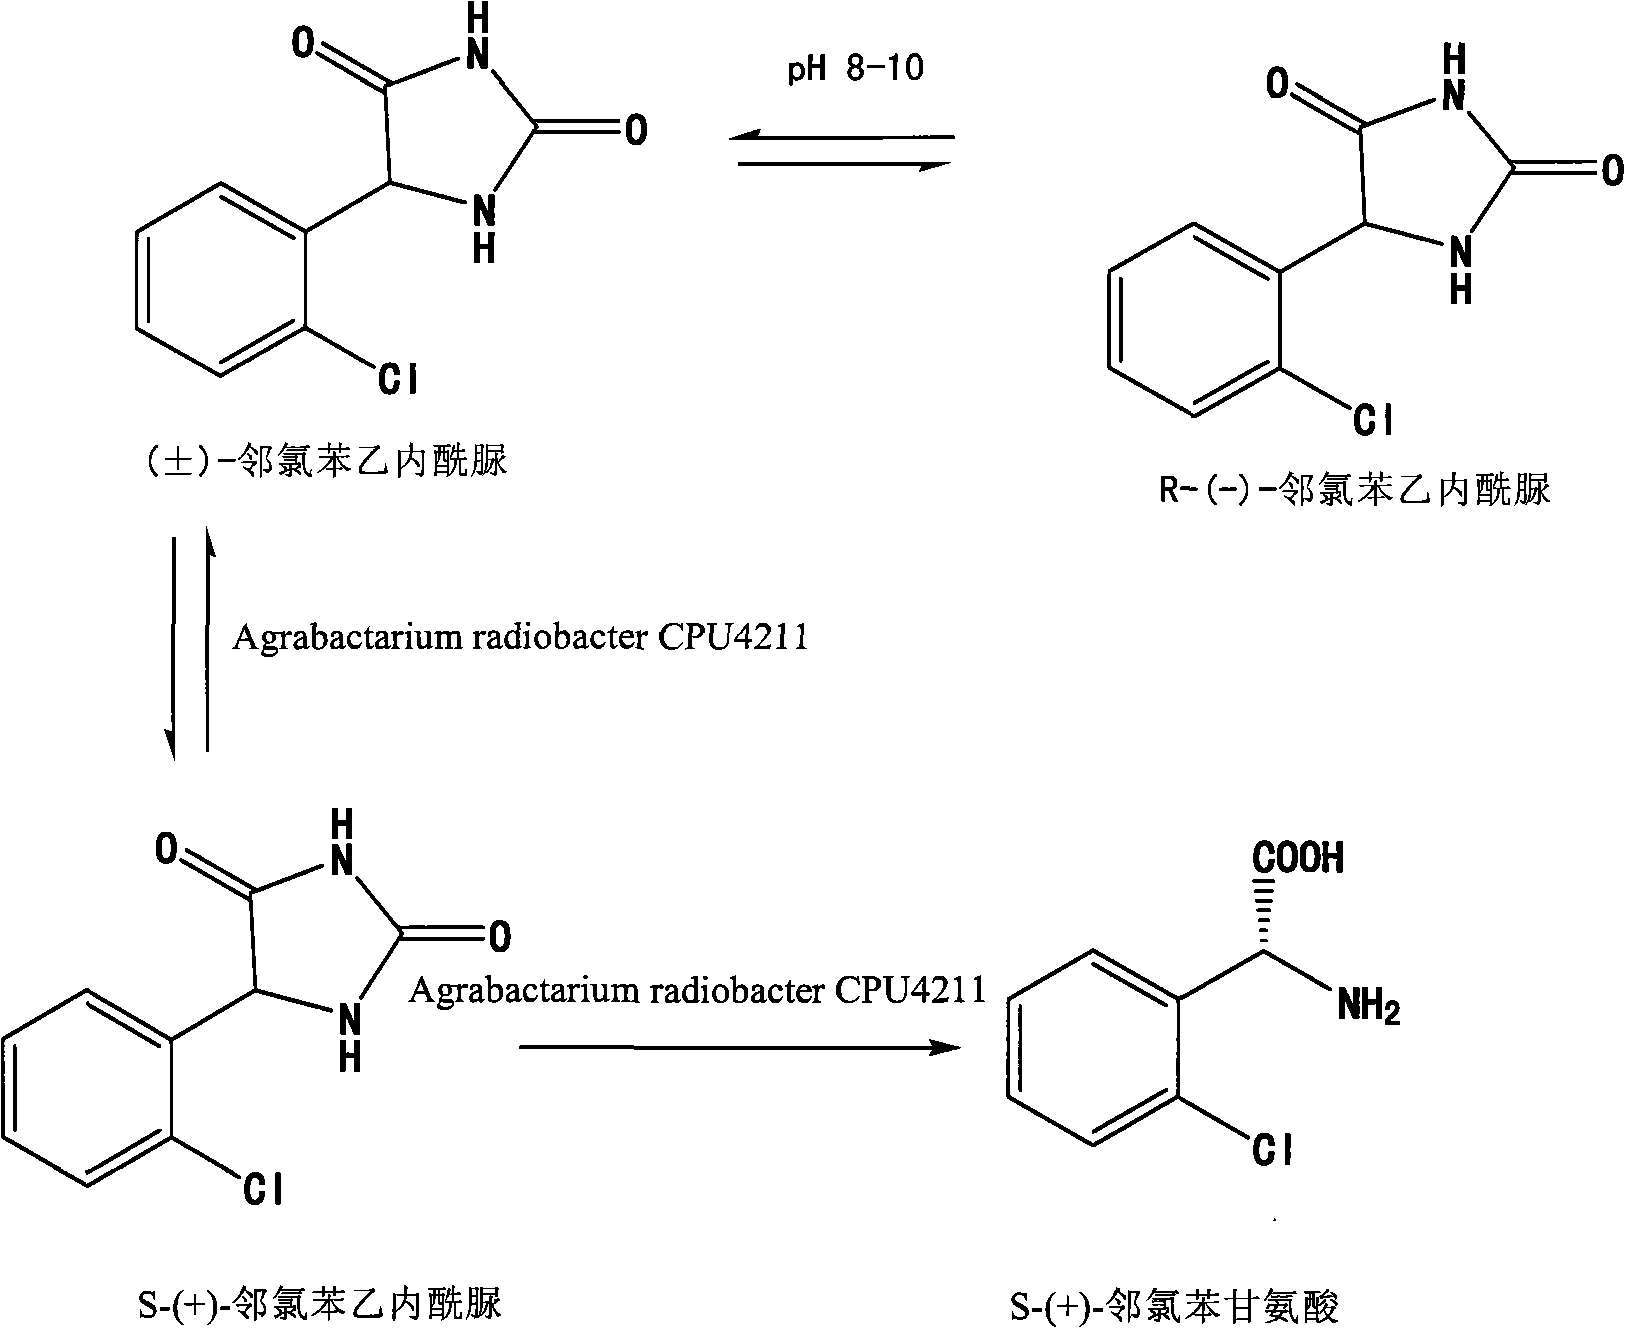 Preparation method of S-(+)-o-chlorobenzoyl glycine